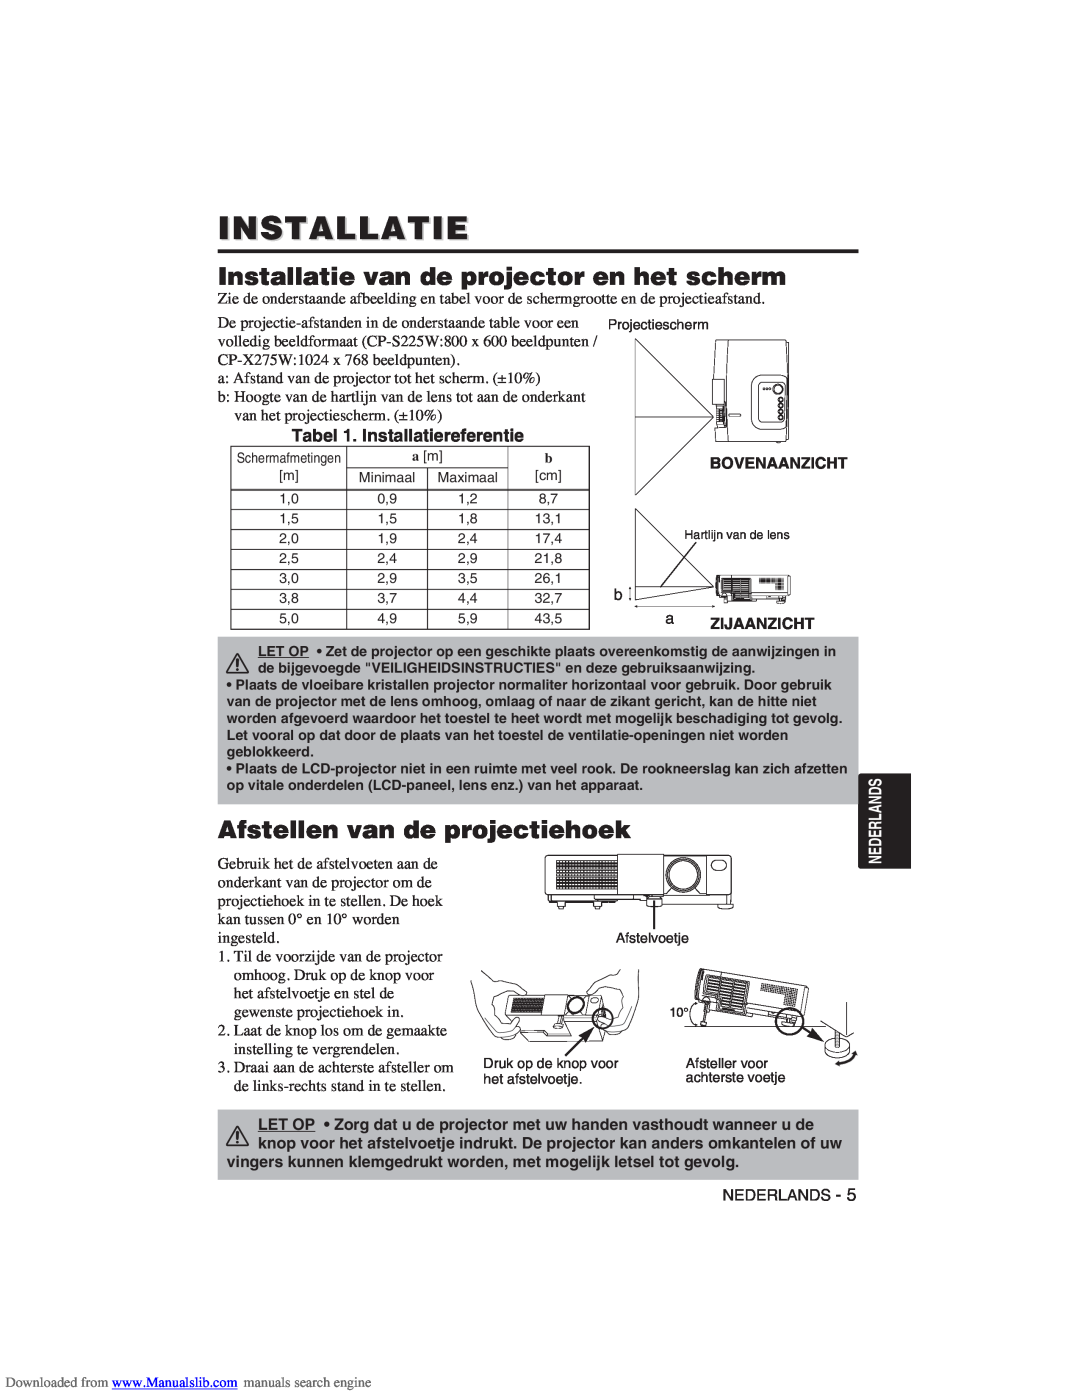 Hitachi CP-X275W user manual Installatie van de projector en het scherm, Afstellen van de projectiehoek 